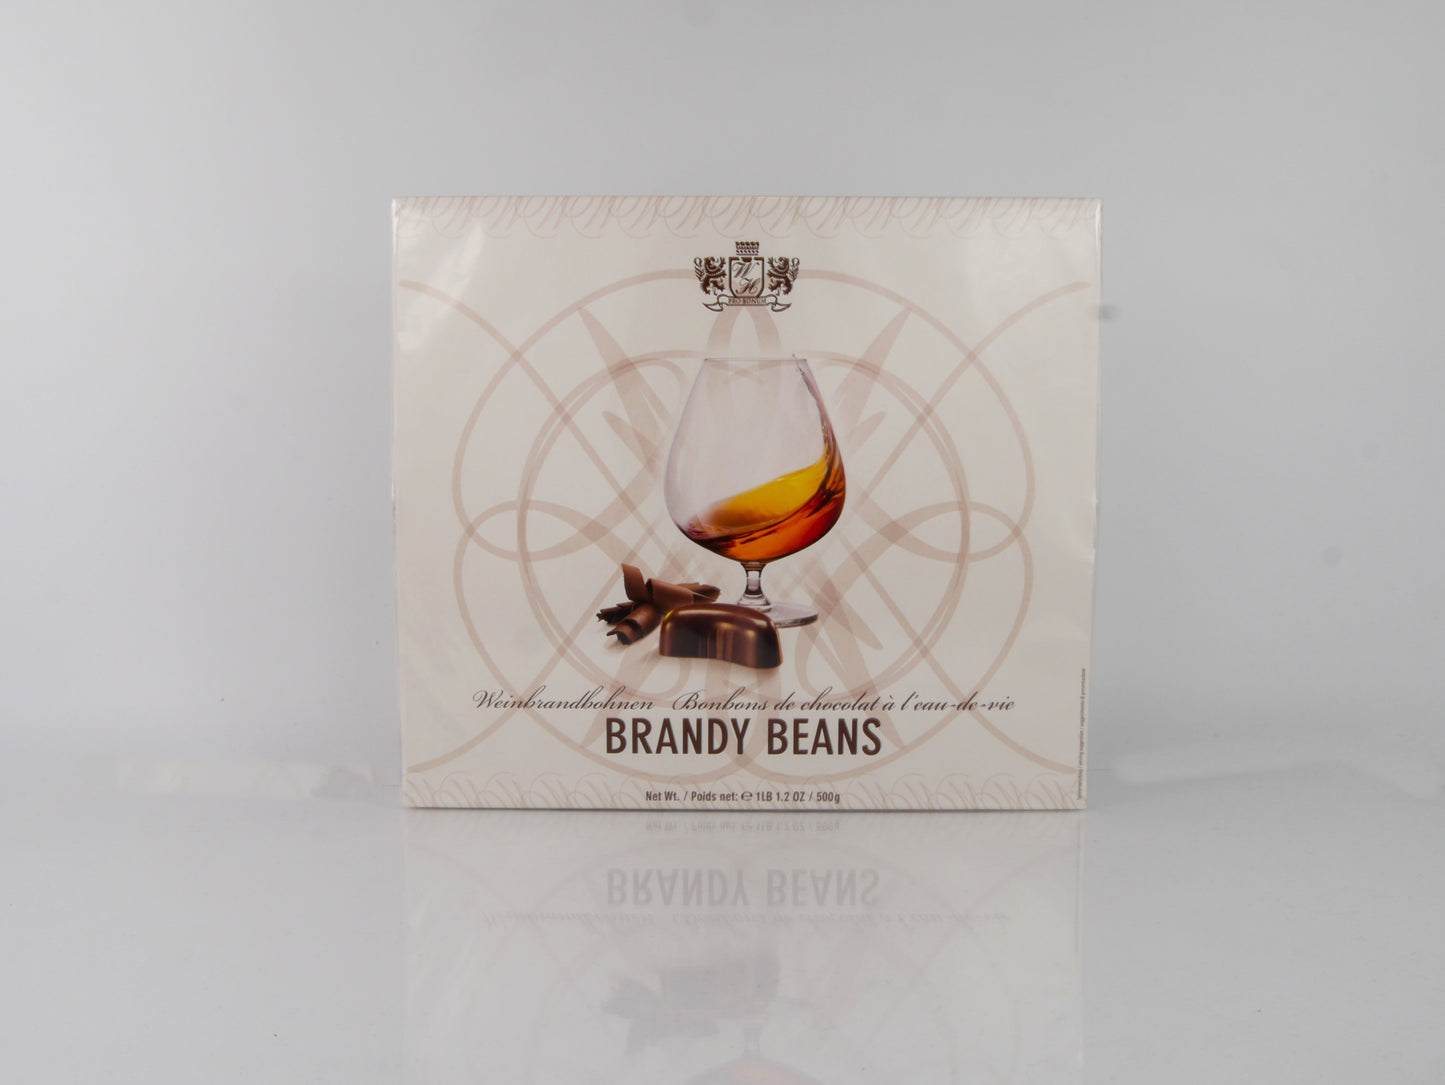 Warner Hudson Brandy Beans 500g